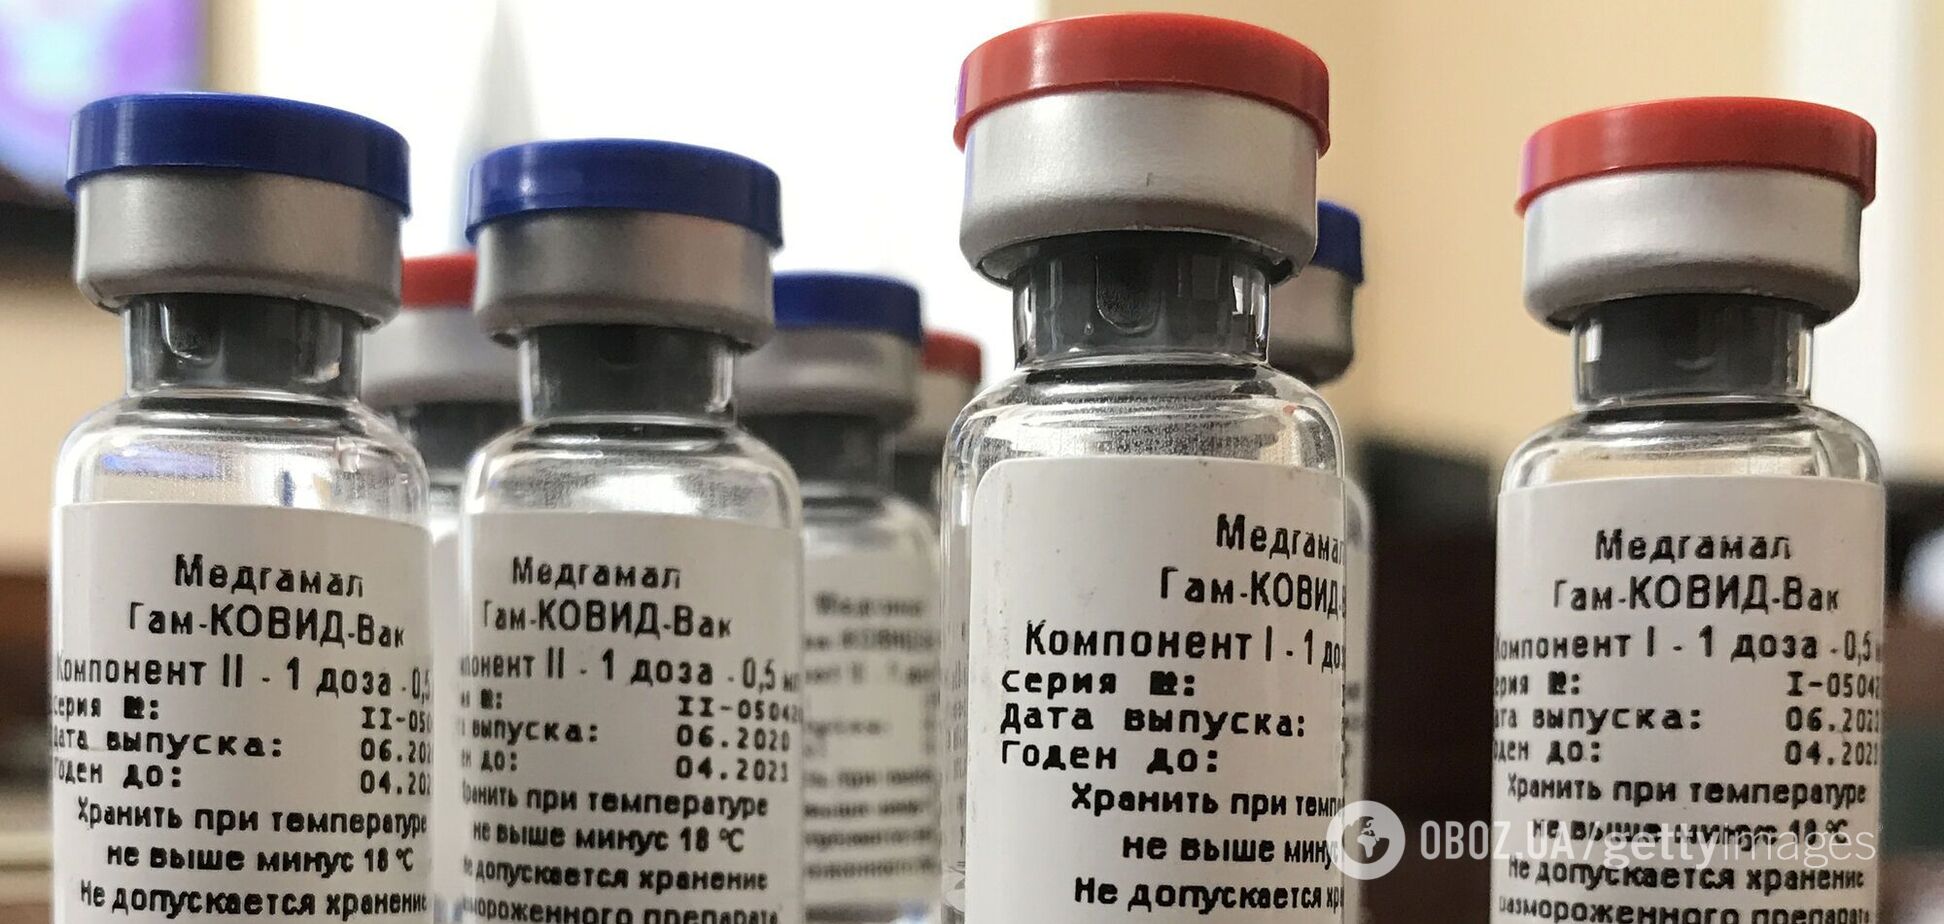 Ученые предполагают, что использование российской вакцины может привести к мутации COVID-19